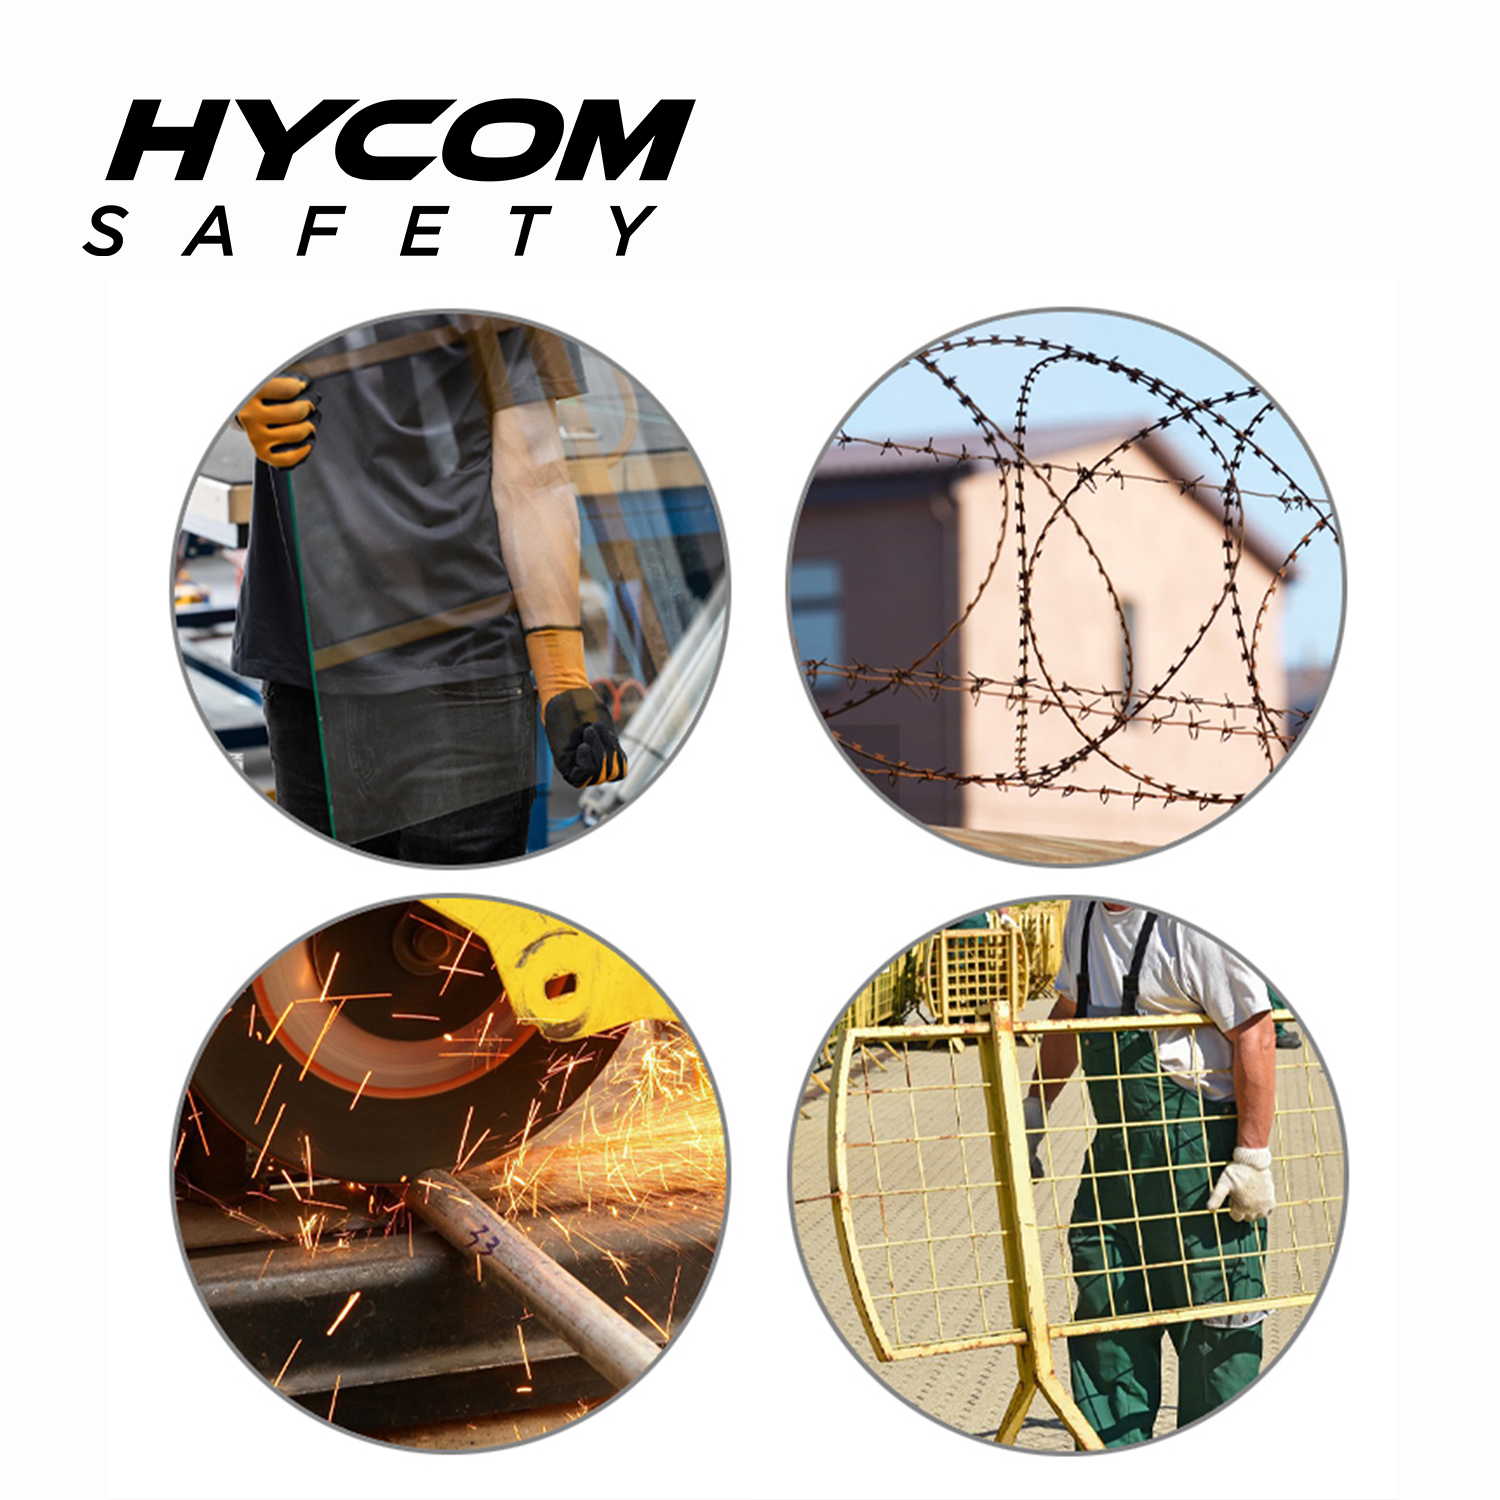 HYCOM ANSI 5 Ropa de suéter resistente a los cortes con cinta reflectante de alta visibilidad y ropa de PPE con orificio para el pulgar